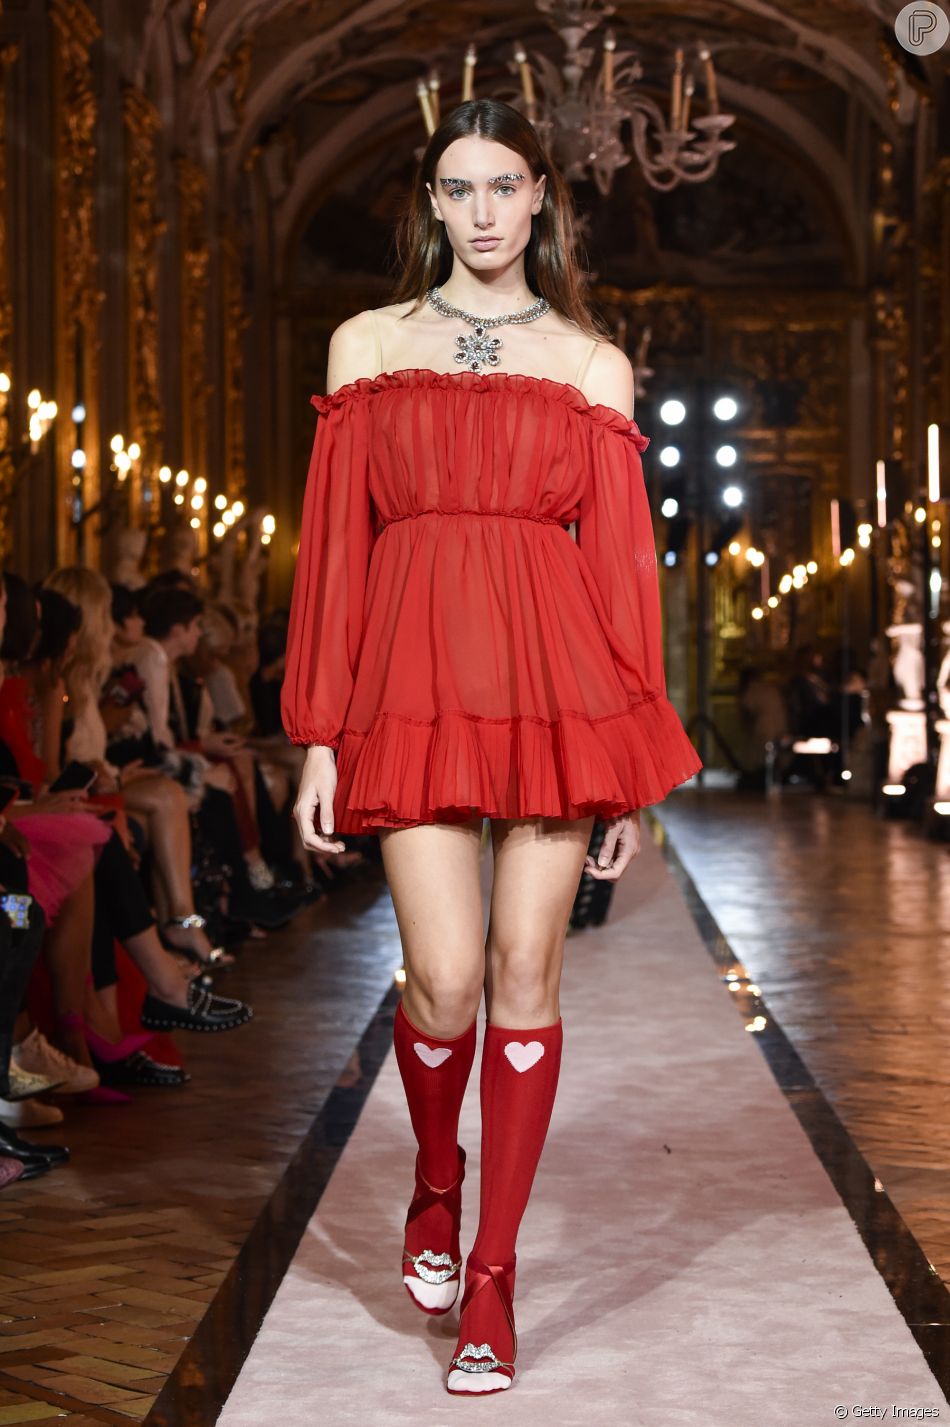 modelo de vestido vermelho curto